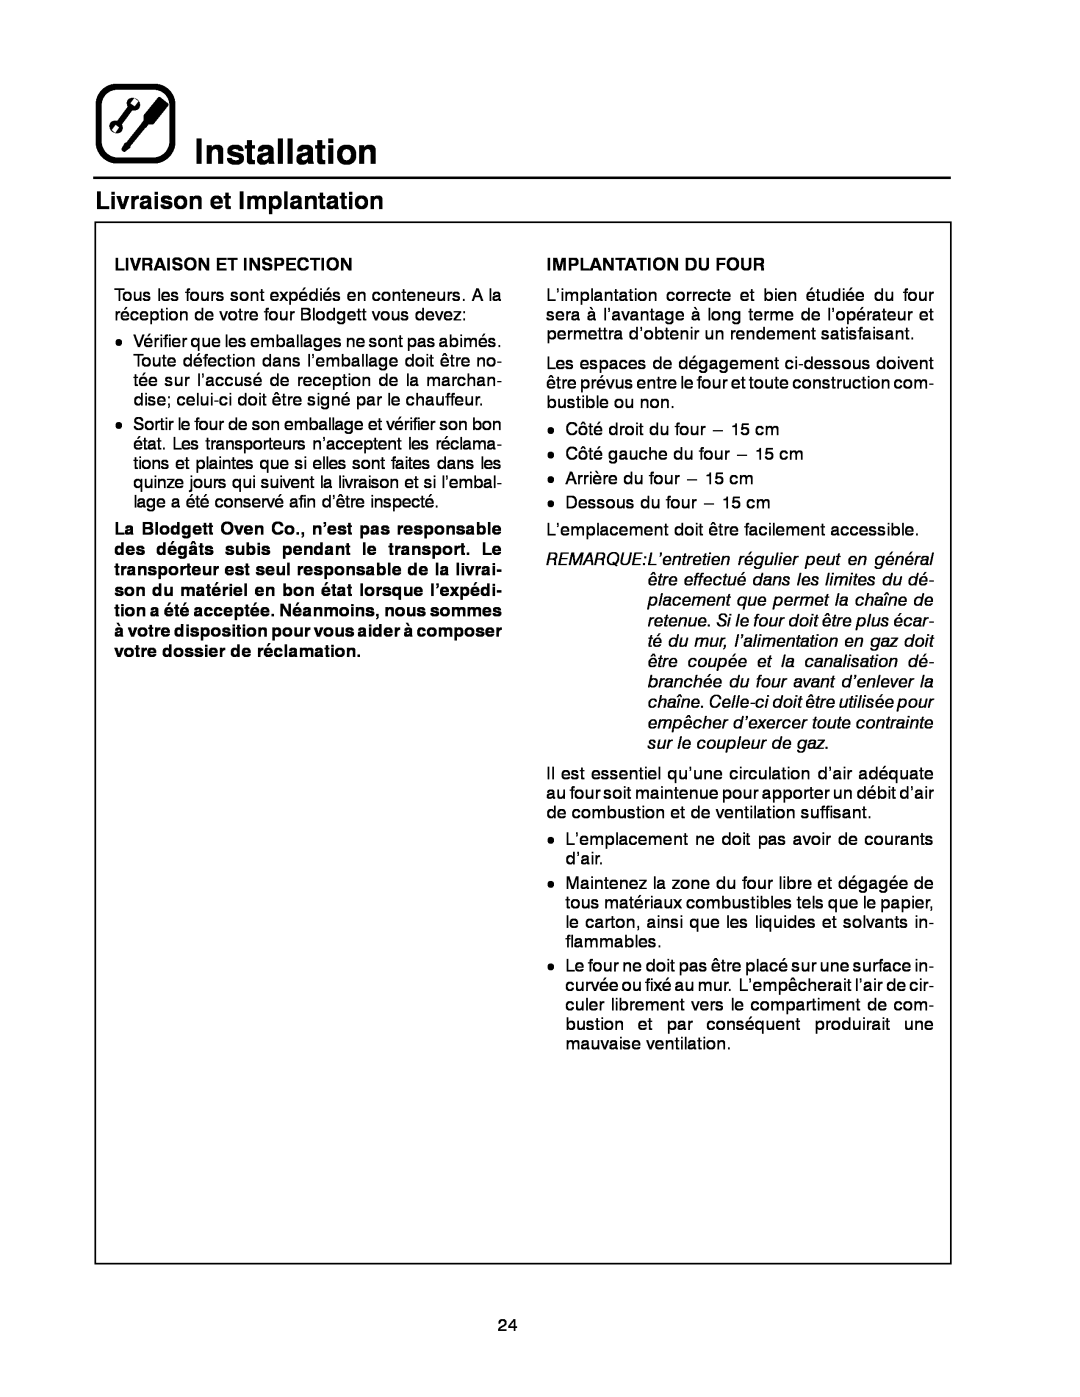 Blodgett 900 SERIES manual Livraison et Implantation, Installation, Livraison Et Inspection, Implantation Du Four 